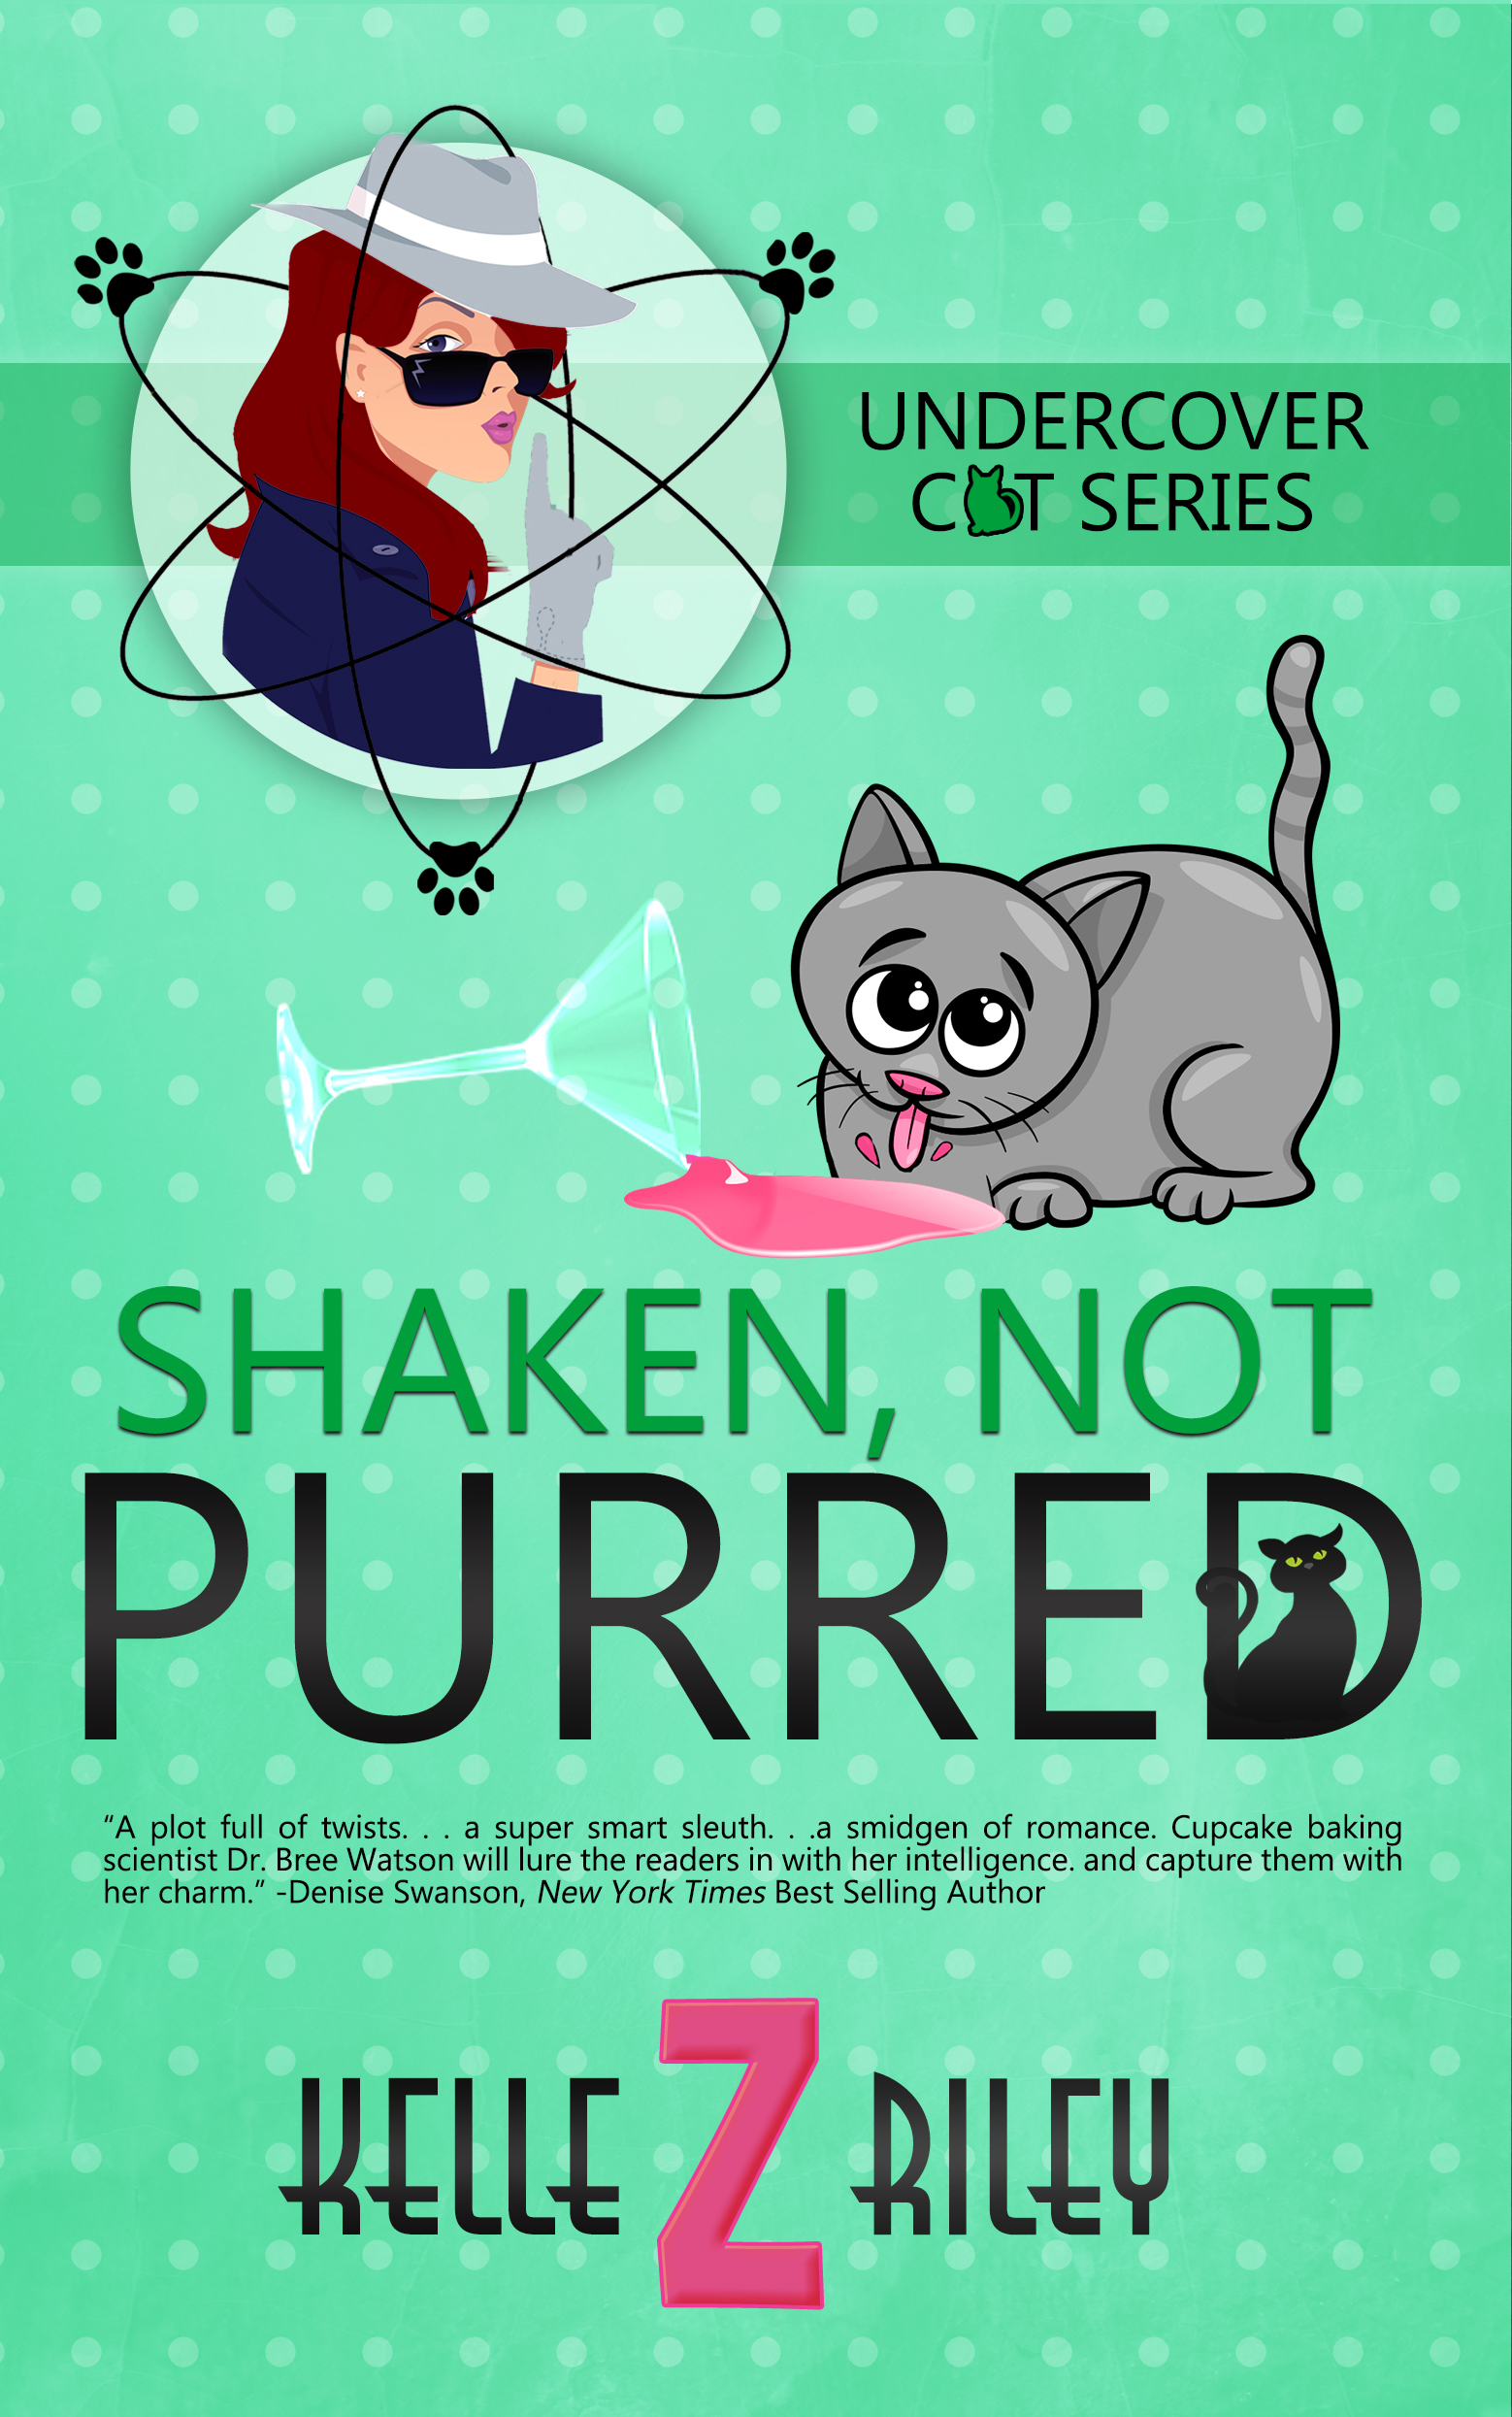 Shaken_Not_Purred_ebook cover.jpg